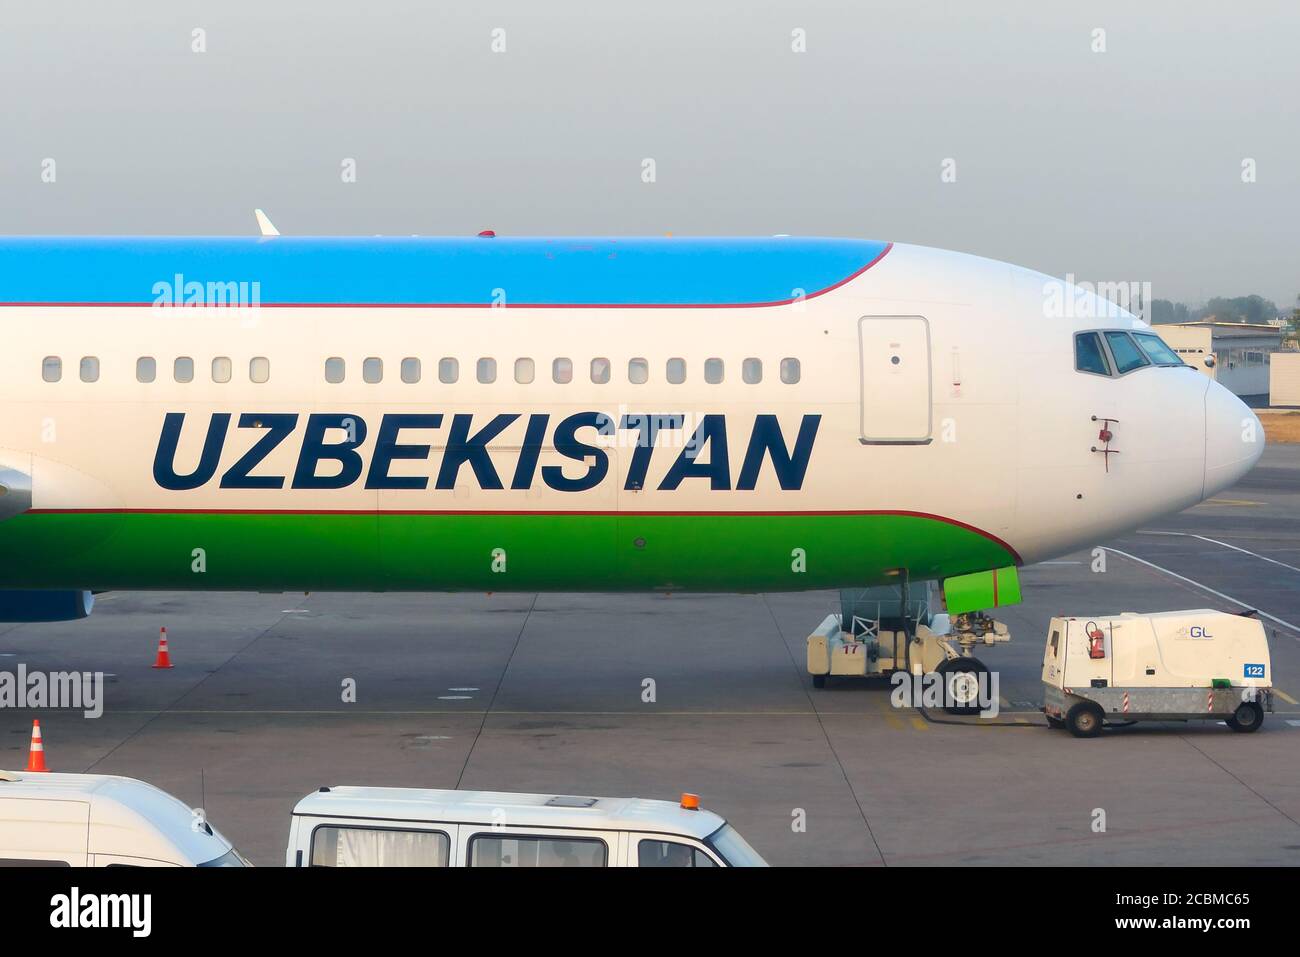 Uzbekistan Airways Boeing 767-300 parcheggiato all'aeroporto internazionale Islam Karimov Tashkent. UZ Airways è un titolo che si presenta sulla fusoliera di un 767. Foto Stock